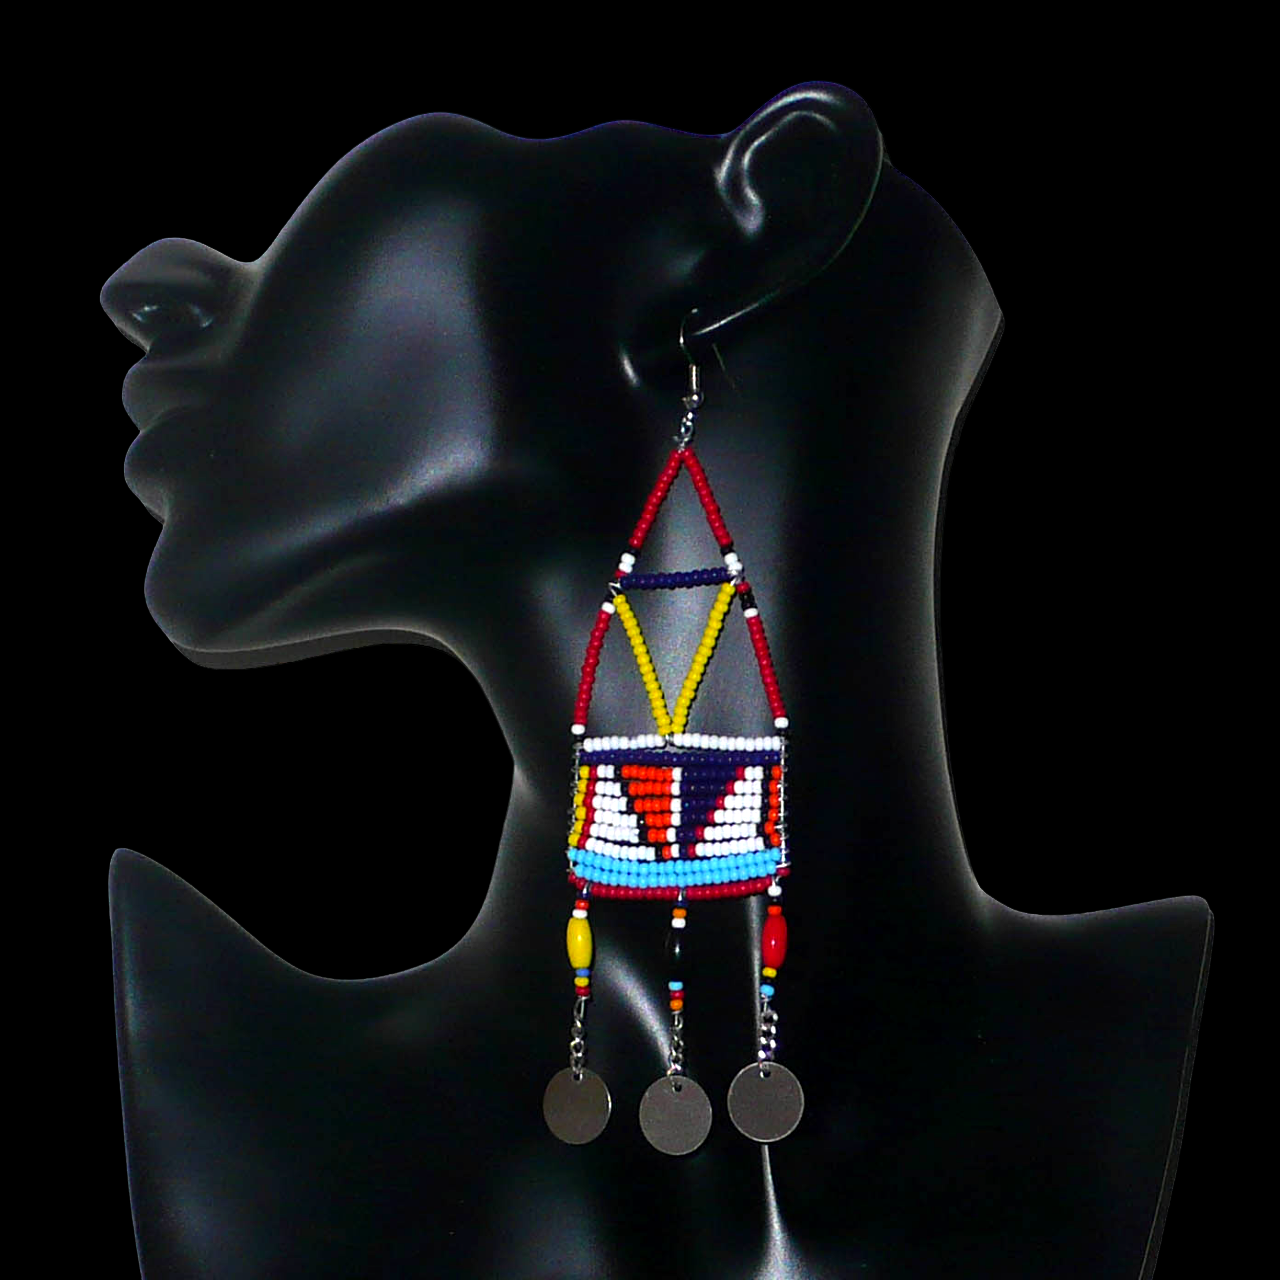 Bijoux africains. Longues boucles d'oreilles africaines de tradition Massai. Mesurant 13 cm de long et 4 cm de large, elles se composent de perles de rocaille et de plastique rouges et multicolores enfilées sur des trames géométriques en fils de fer. Elles se prolongent de trois chainettes perlées se terminant par trois pastilles en métal. Elles se portent sur des oreilles percées, avec des crochets en acier inoxydable. Présentées sur un mannequin. Timeless Fineries